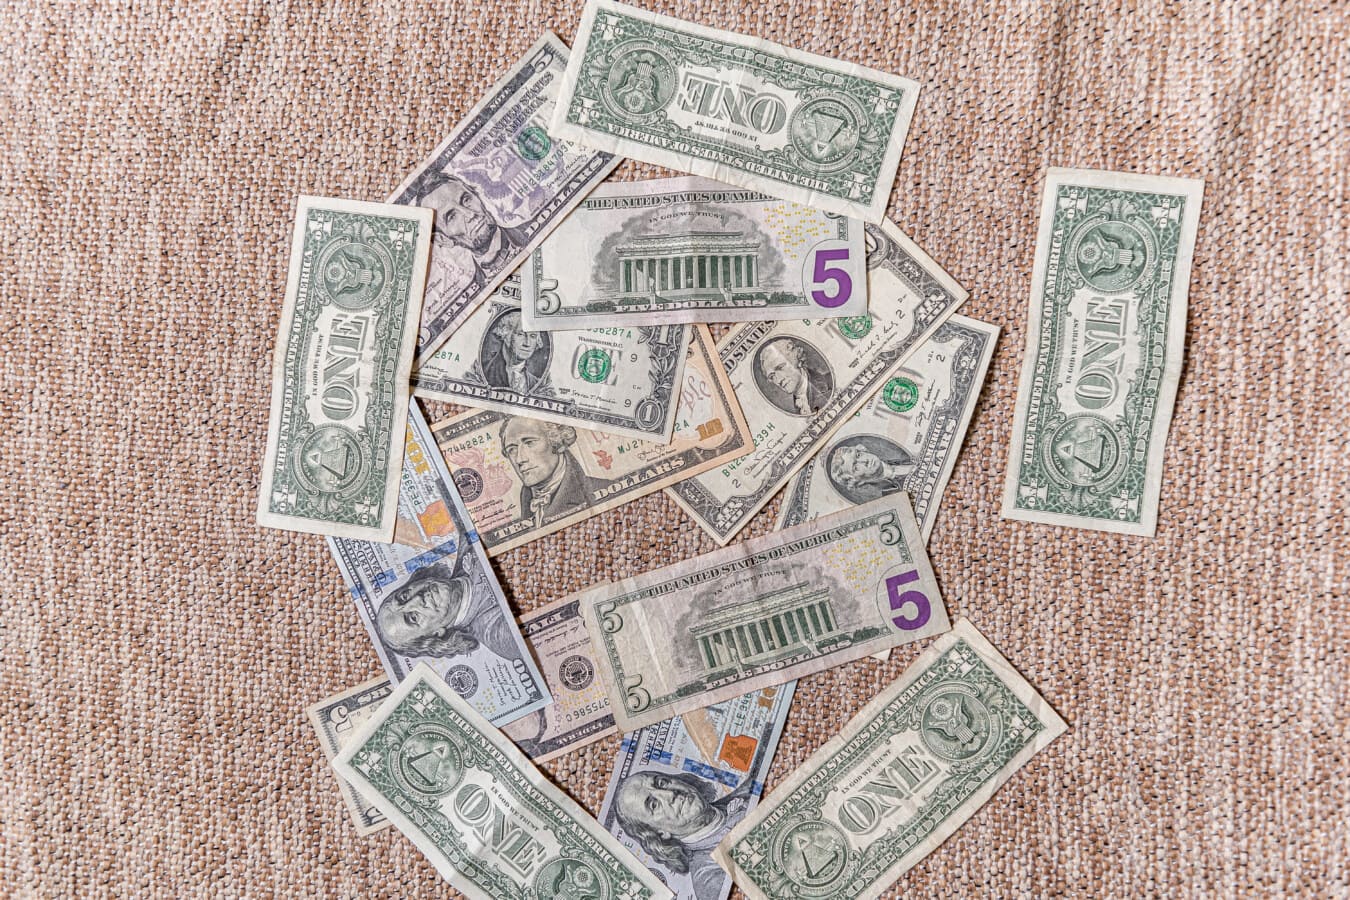 คอลเลกชัน, ดอลลาร์, เงินกระดาษ, เงิน, สกุลเงิน, กระดาษ, ประหยัด, ความสำเร็จ, ทางการเงิน, เงินสด